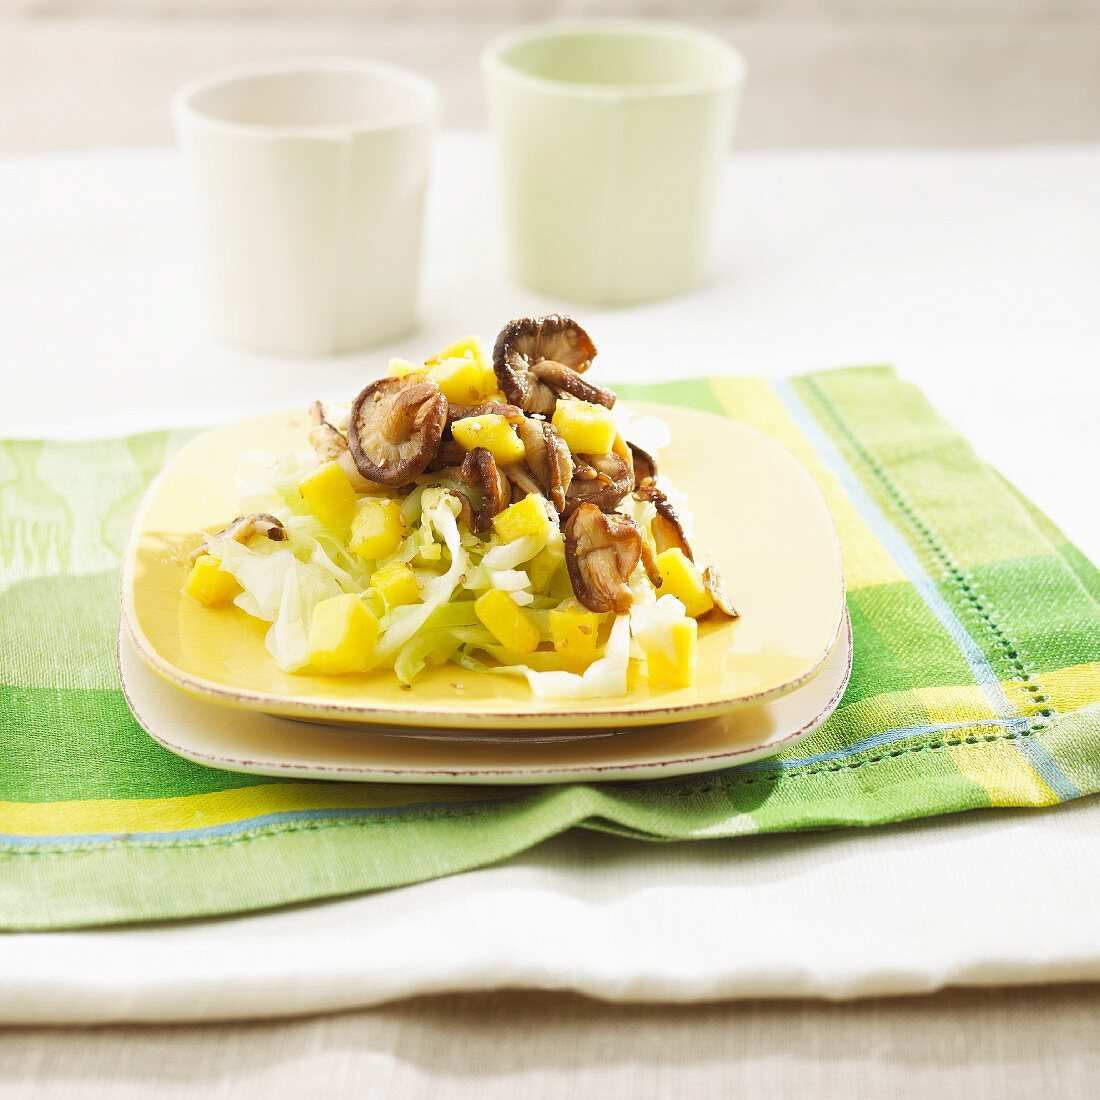 Spitzkohl aus dem Wok mit Shiitakepilzen und Mango